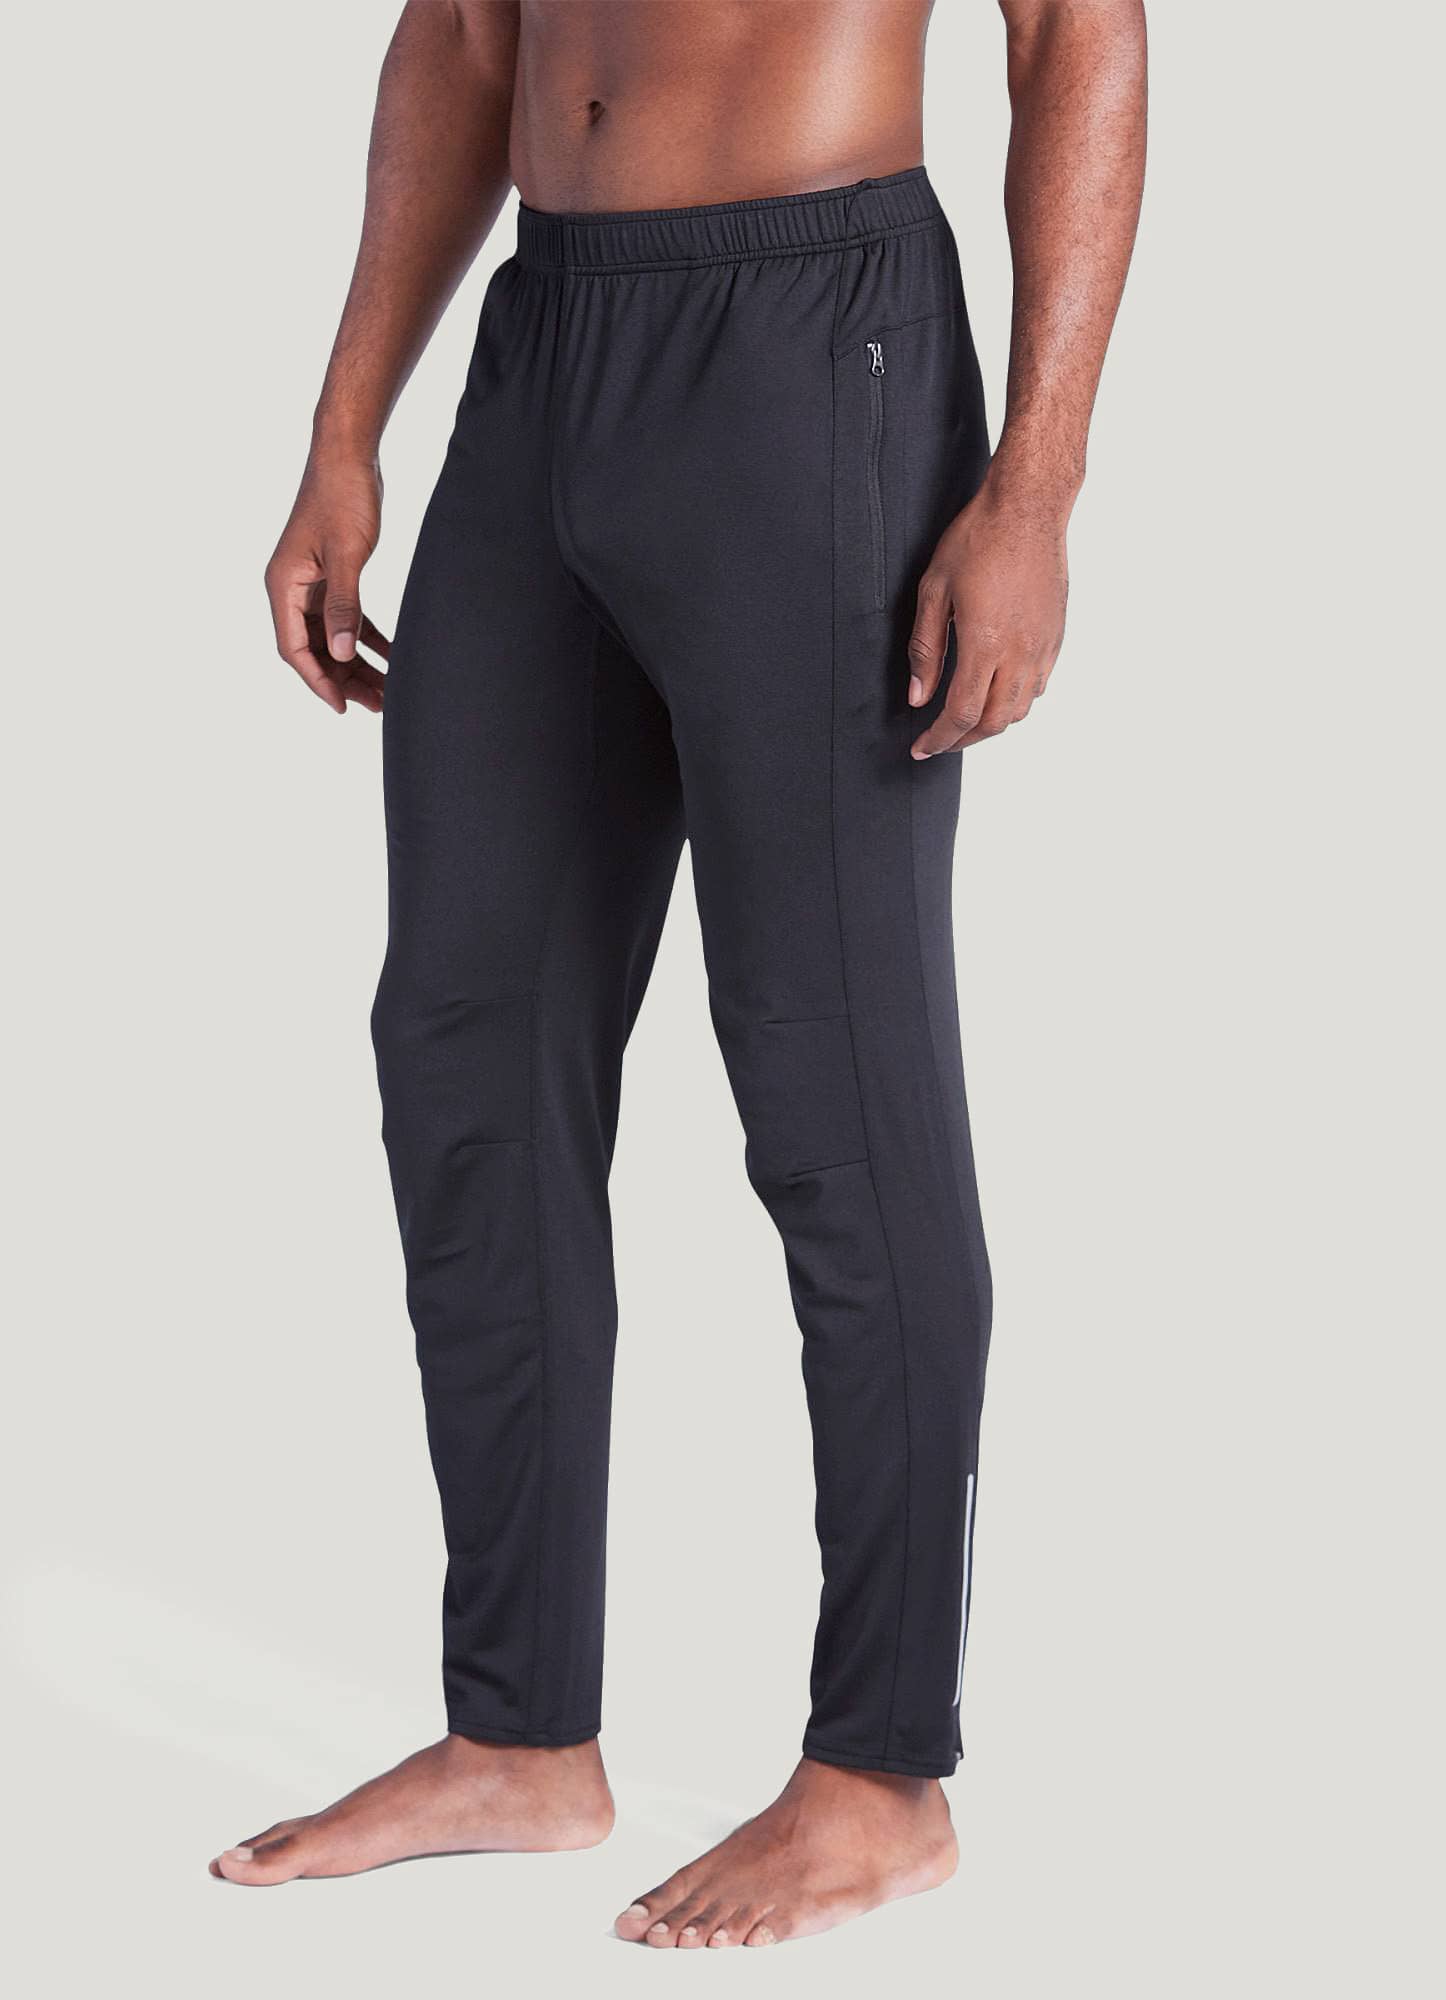 Jockey Sport Men's Black Fleece Lined Sweatpants Medium Cozy Soft Stretch  Fleece | eBay